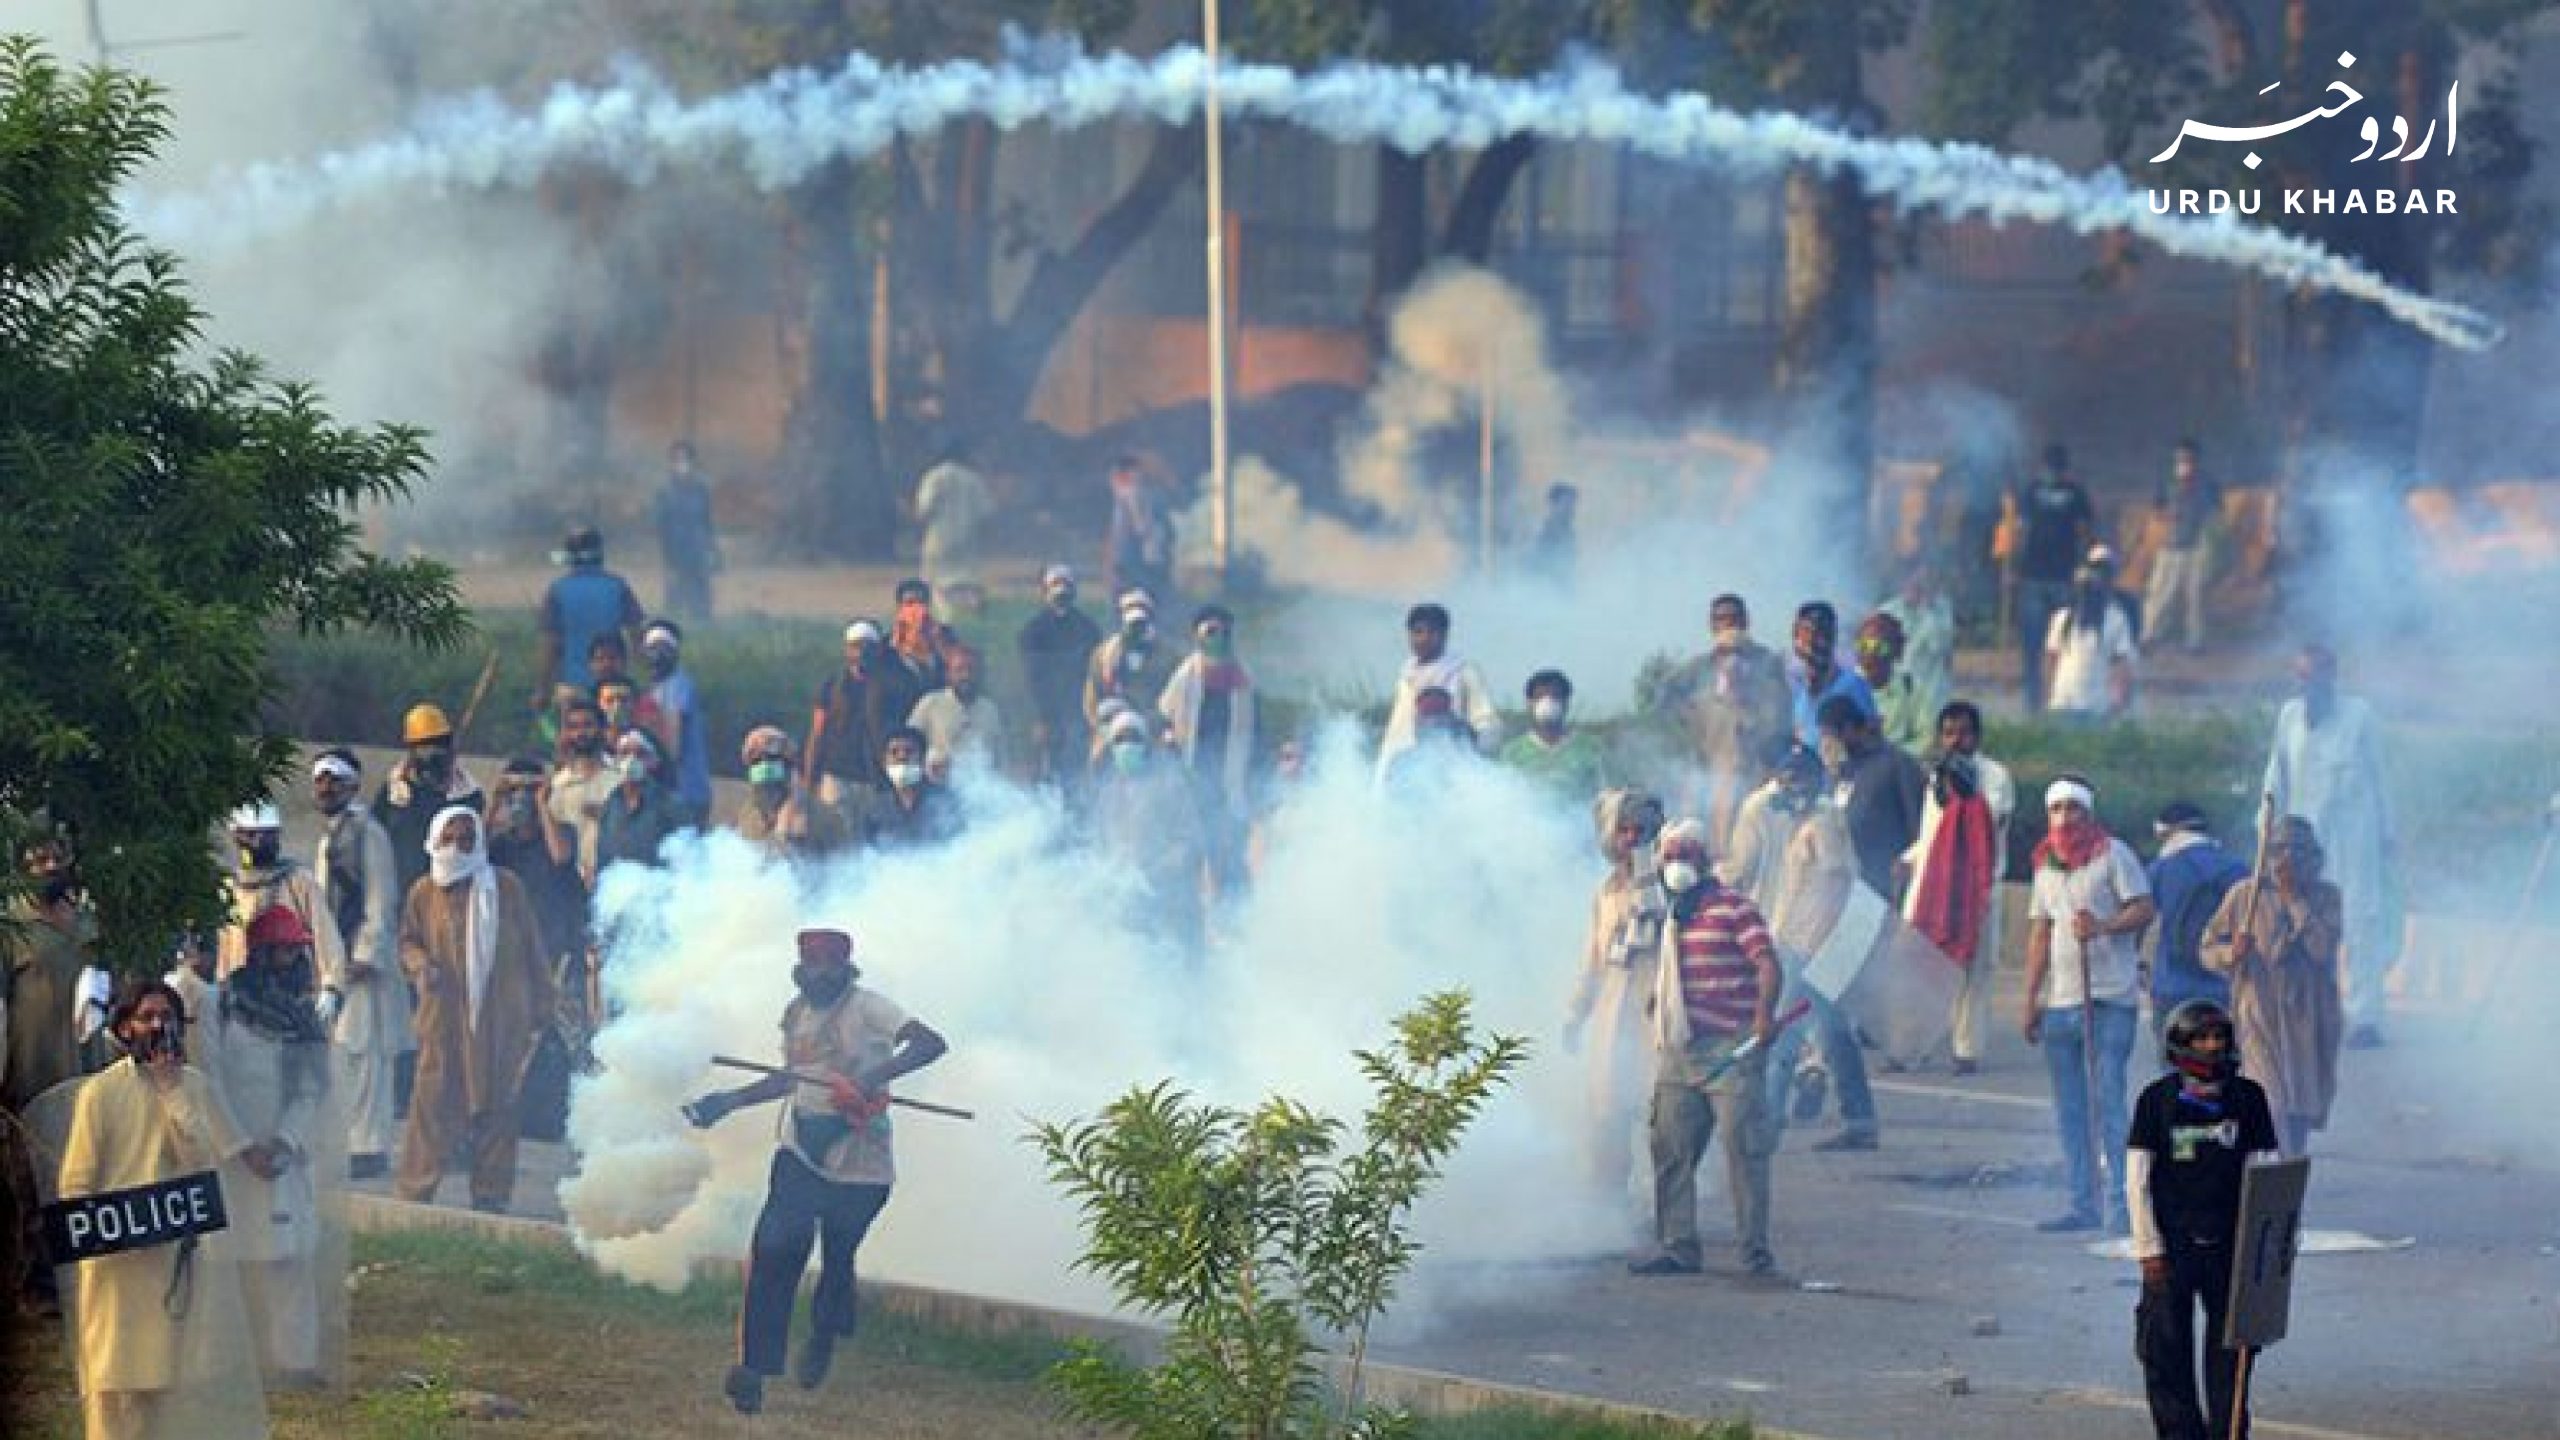 اسلام آباد میں سرکاری ملازمین کا تنخواہ بڑھانے کا مطالبہ، احتجاج پر پولیس کا آنسو گیس